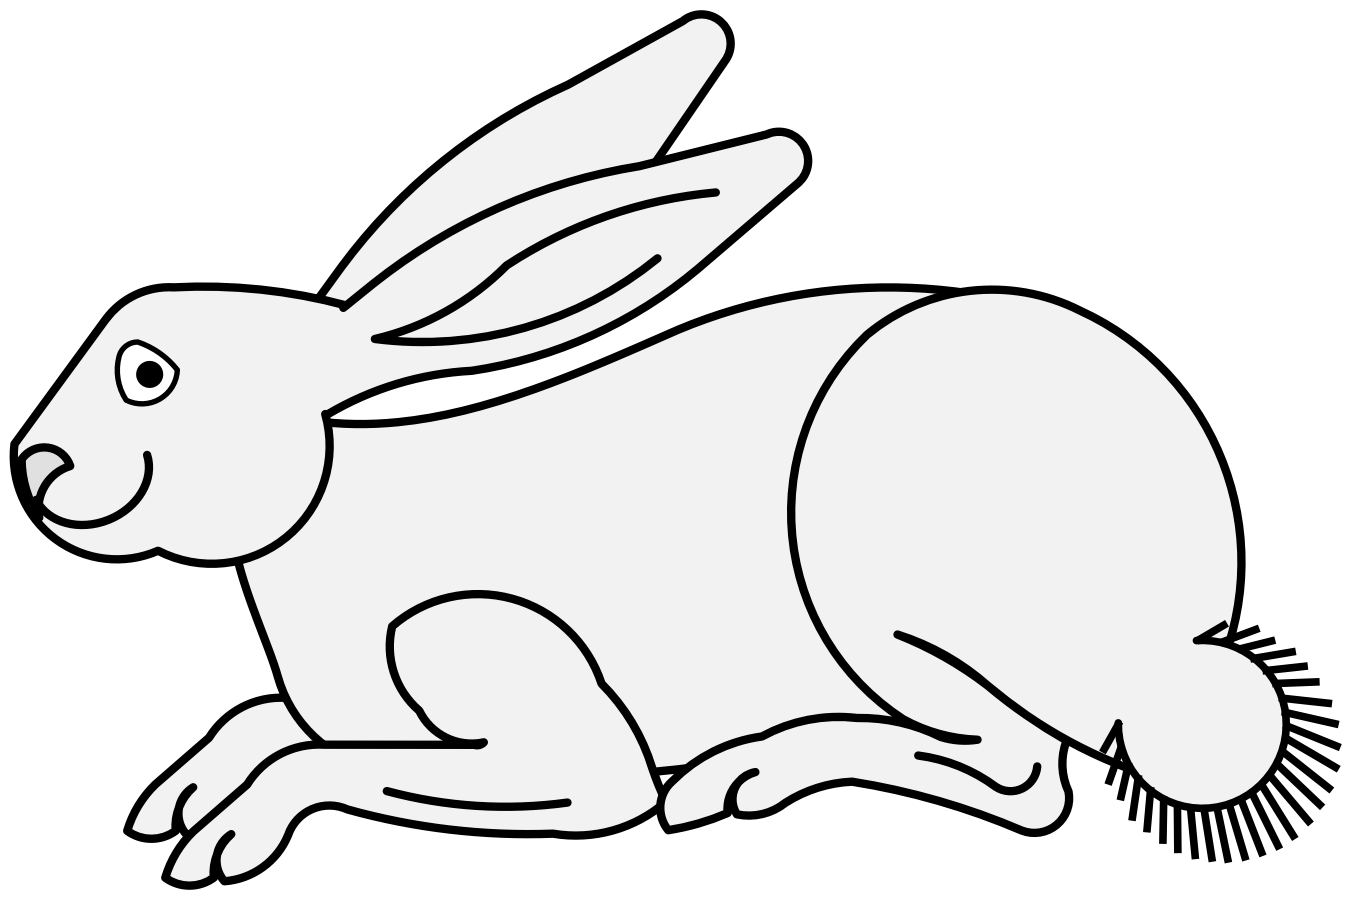 Rabbit - Traceable Heraldic Art